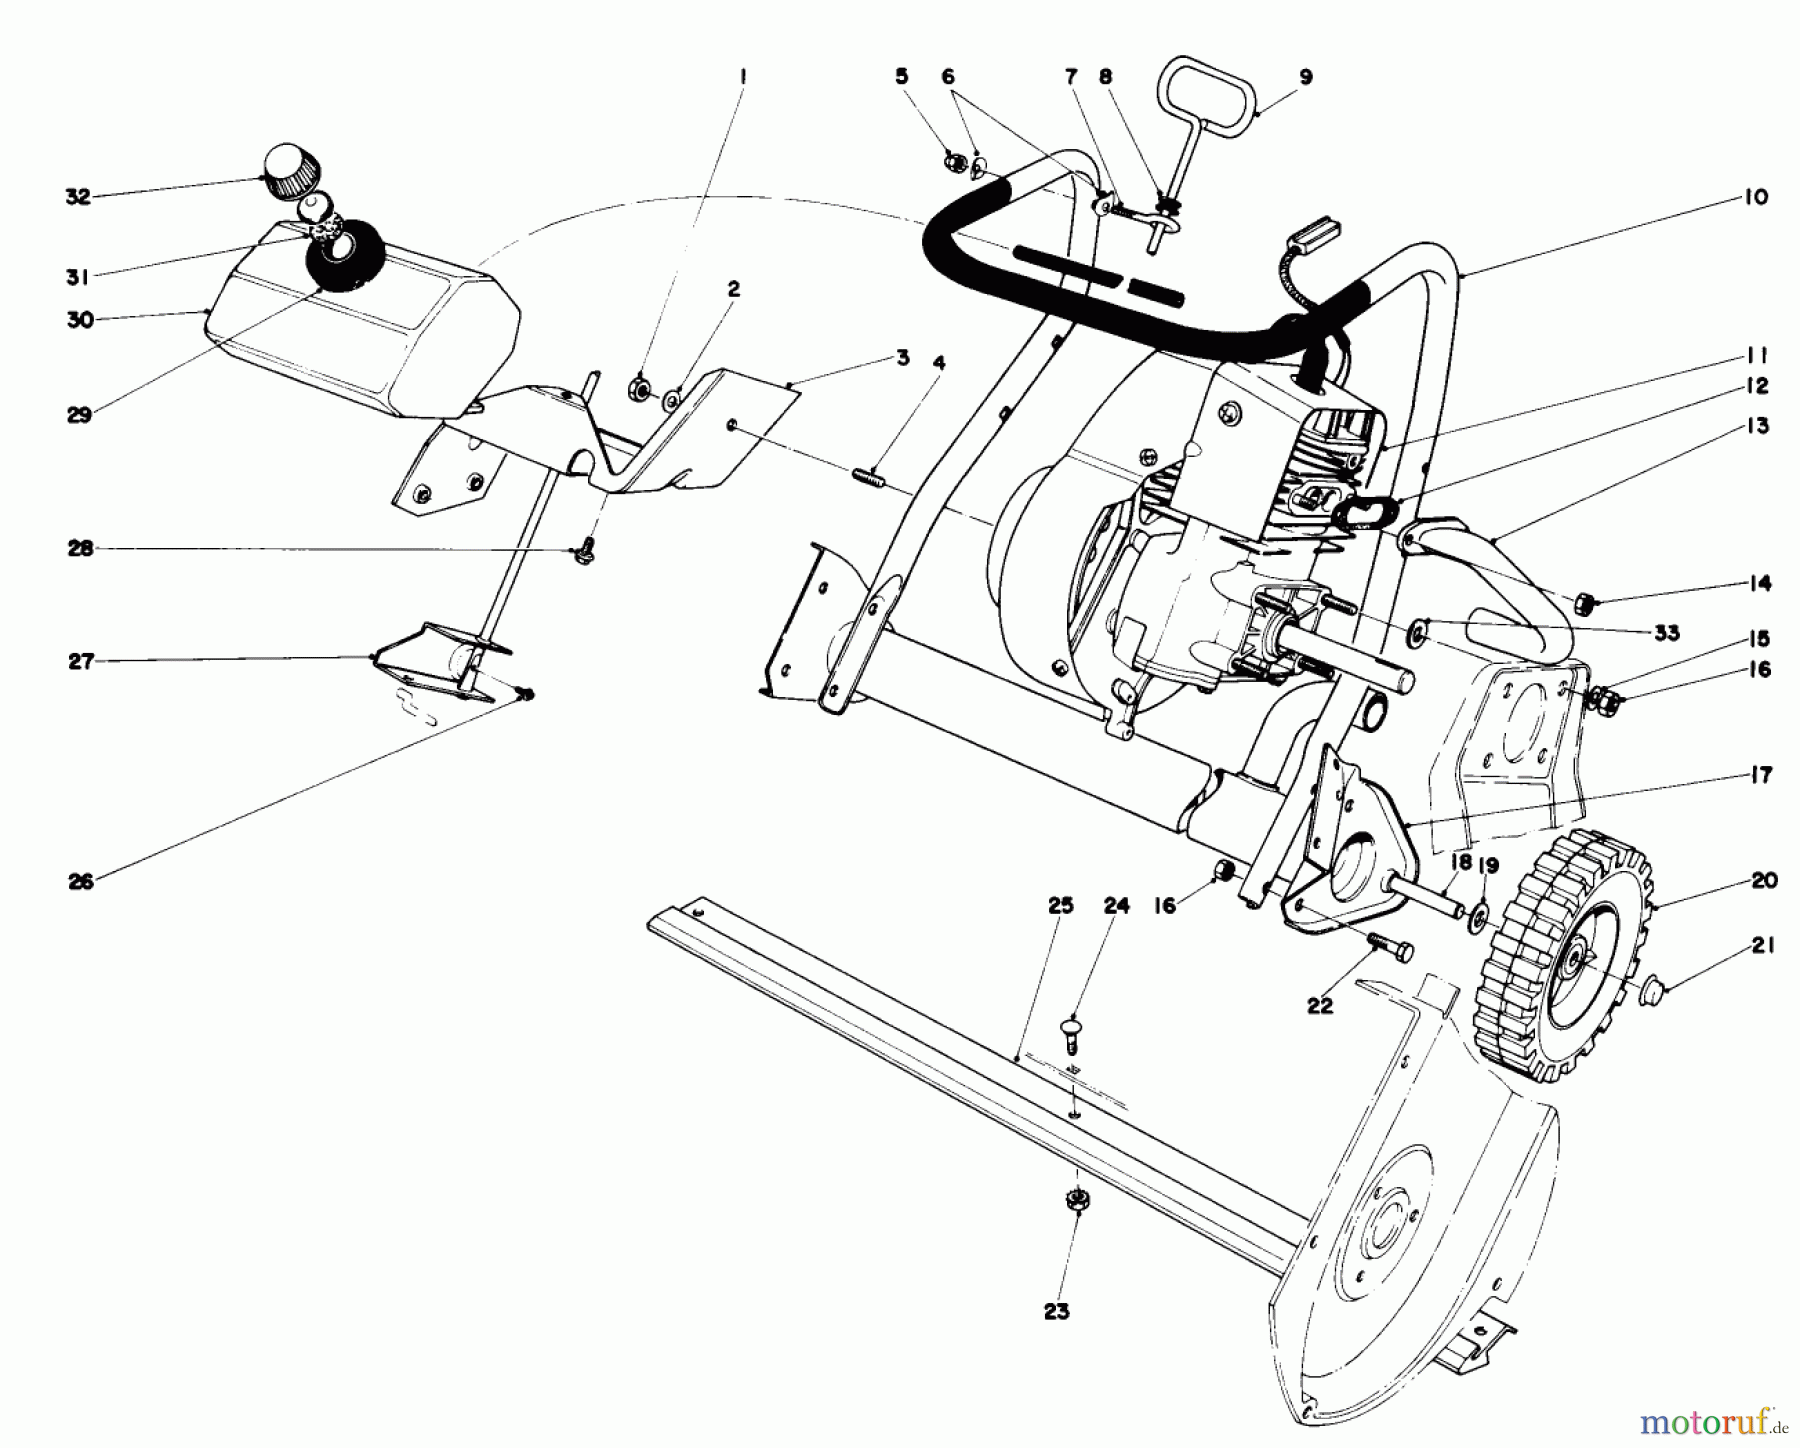  Toro Neu Snow Blowers/Snow Throwers Seite 1 38120 (S-200) - Toro S-200 Snowthrower, 1980 (0000001-0015000) ENGINE ASSEMBLY